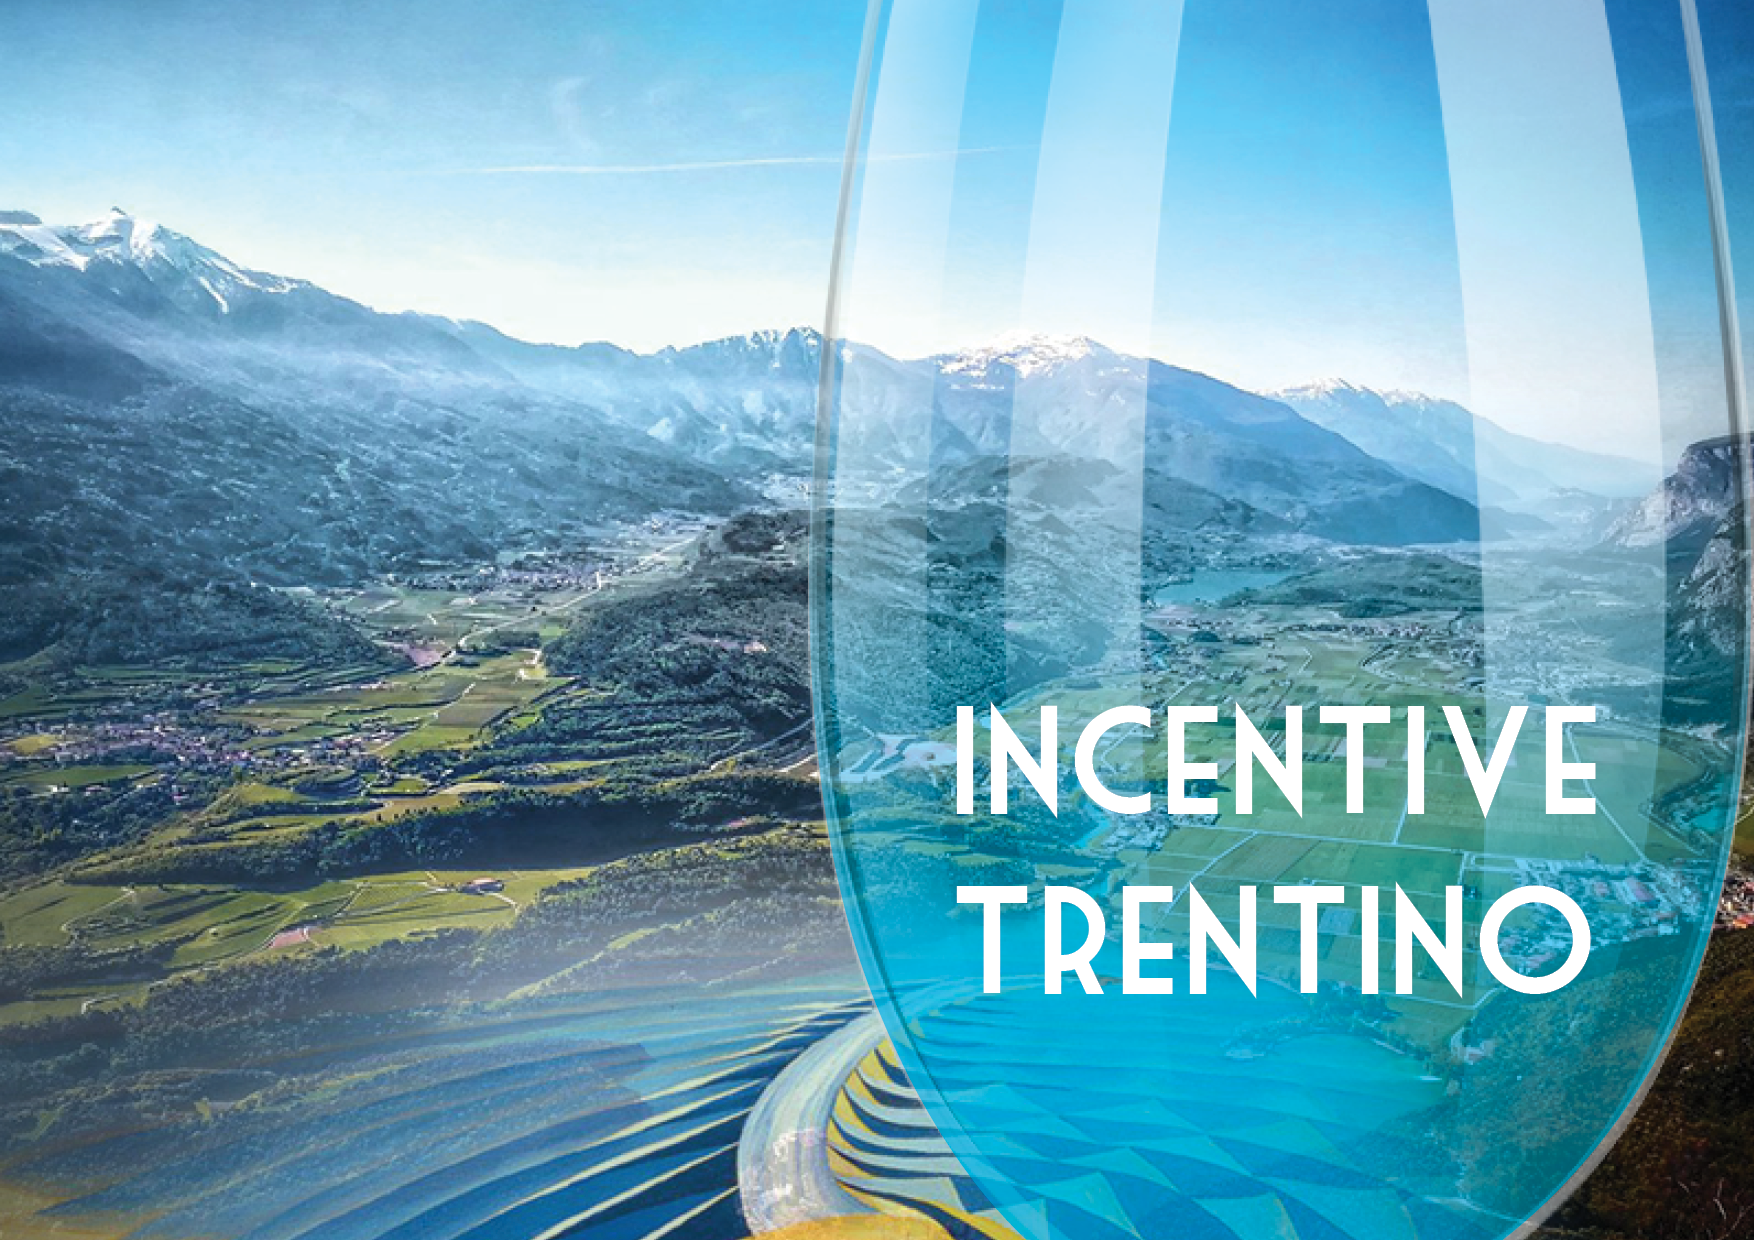 Incentive Trentino condensed